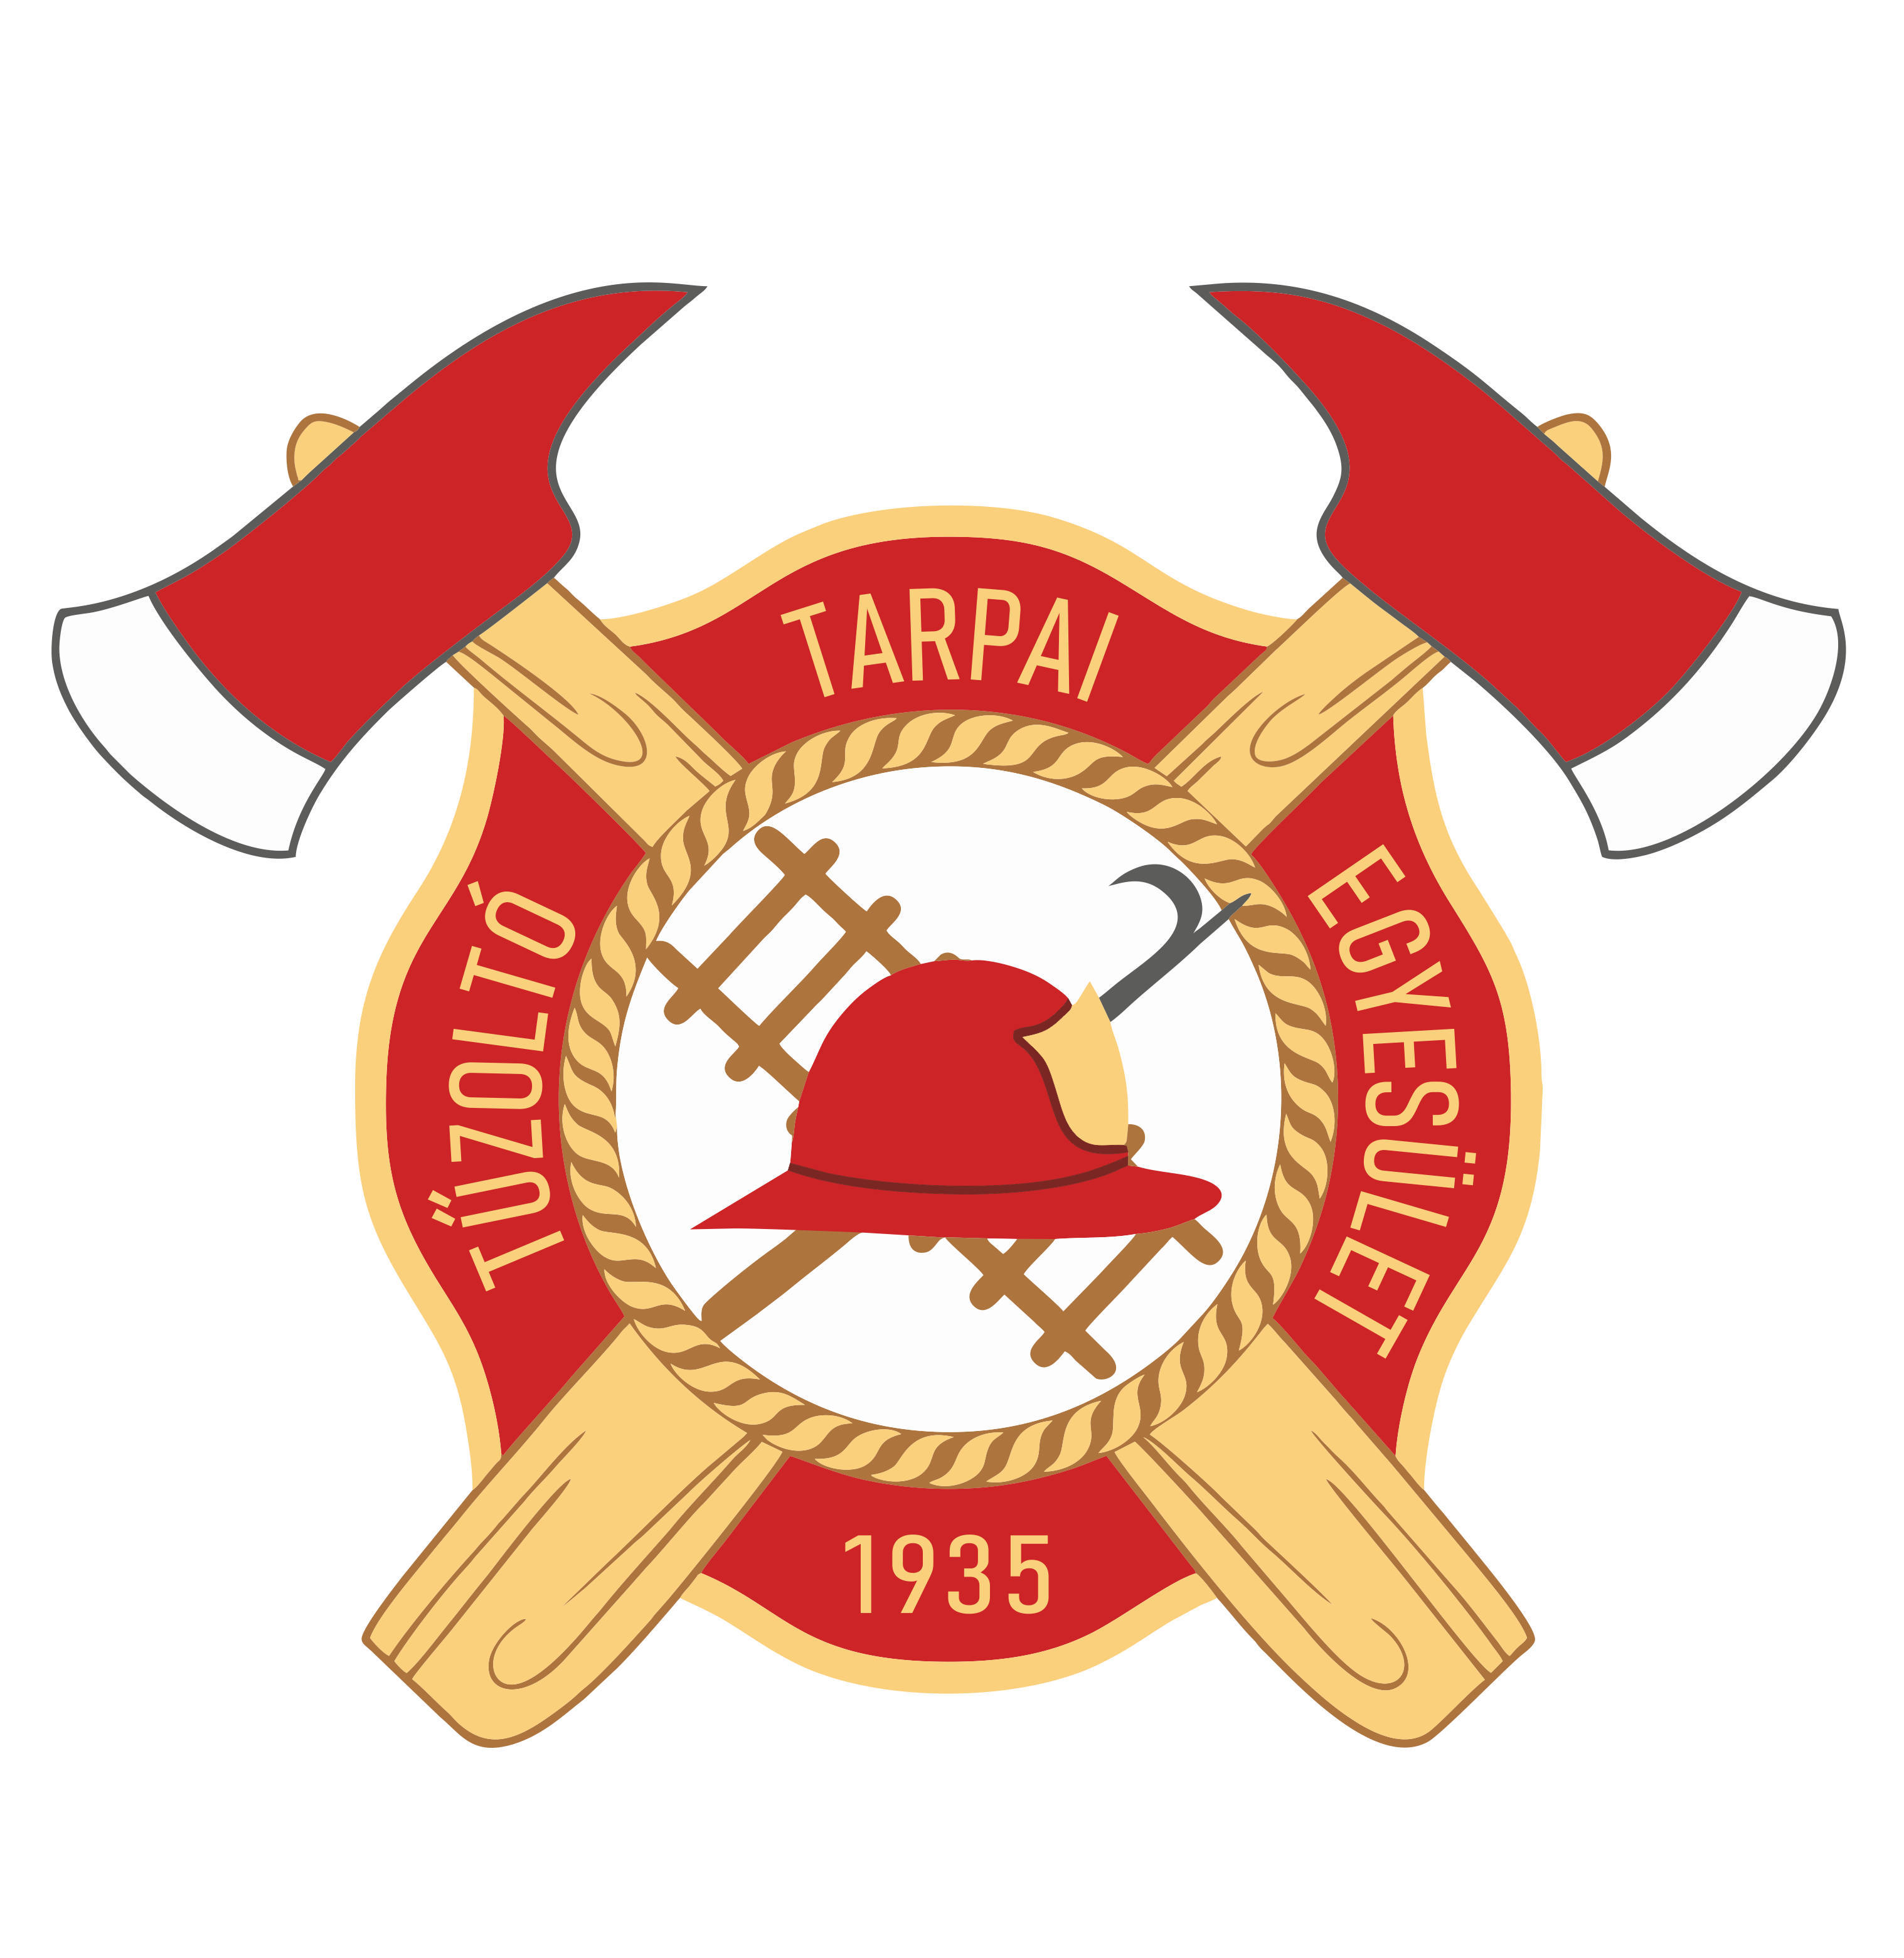 Tarpai Tűzoltó Egyesület